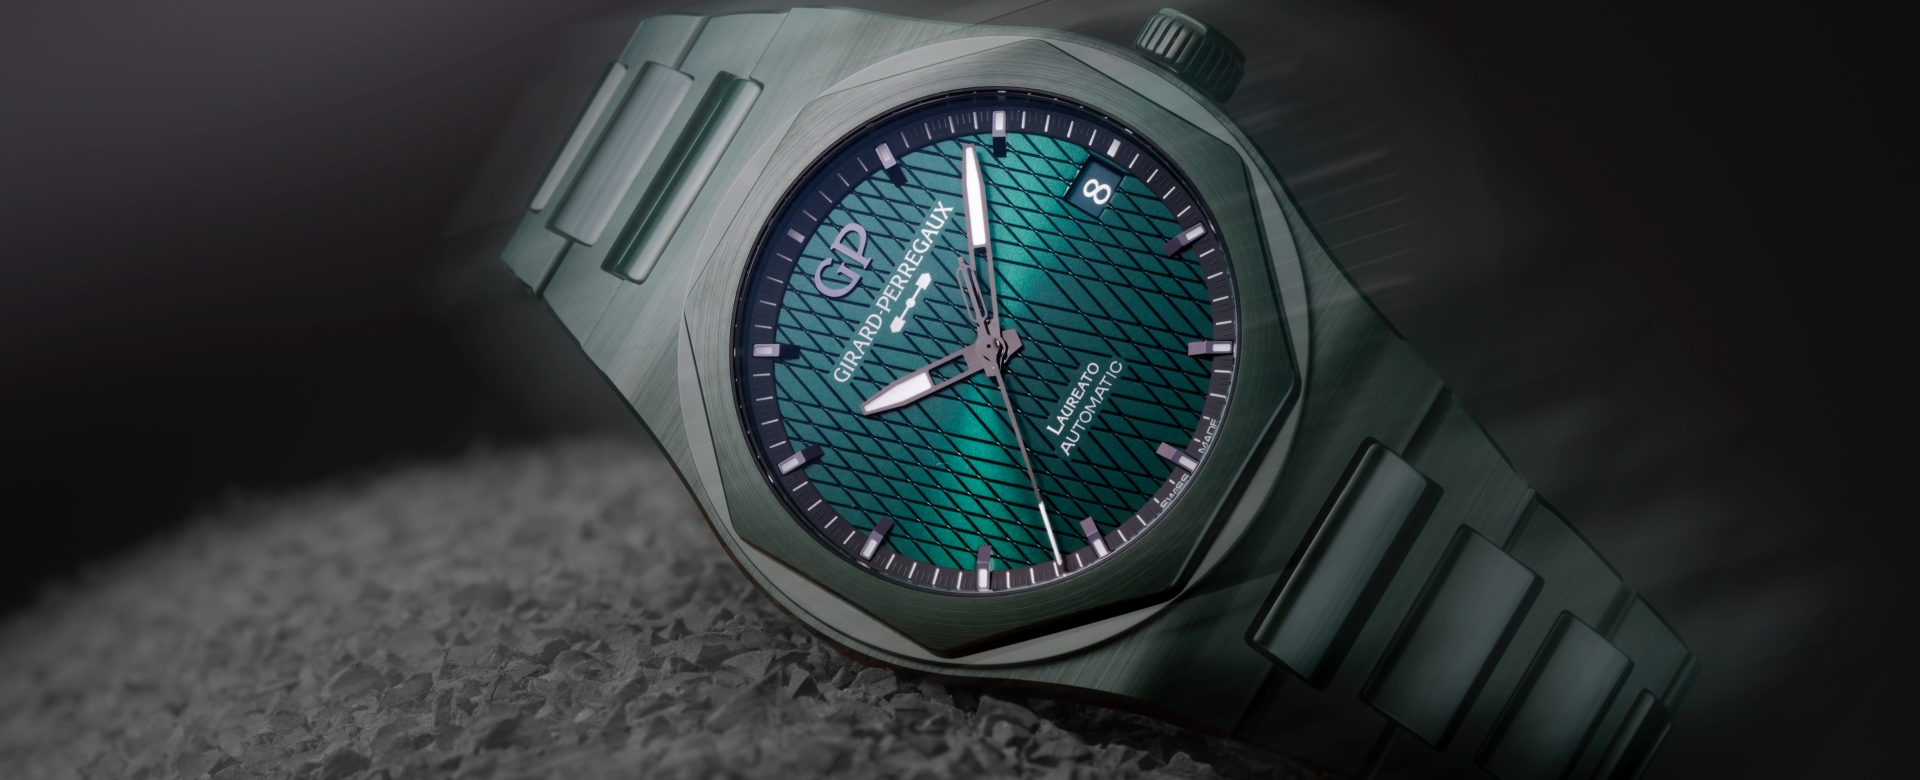 Bộ ảnh đồng hồ Finisher Moves: Chinh phục thời gian với những “cỗ máy” hoàn mỹ nhất